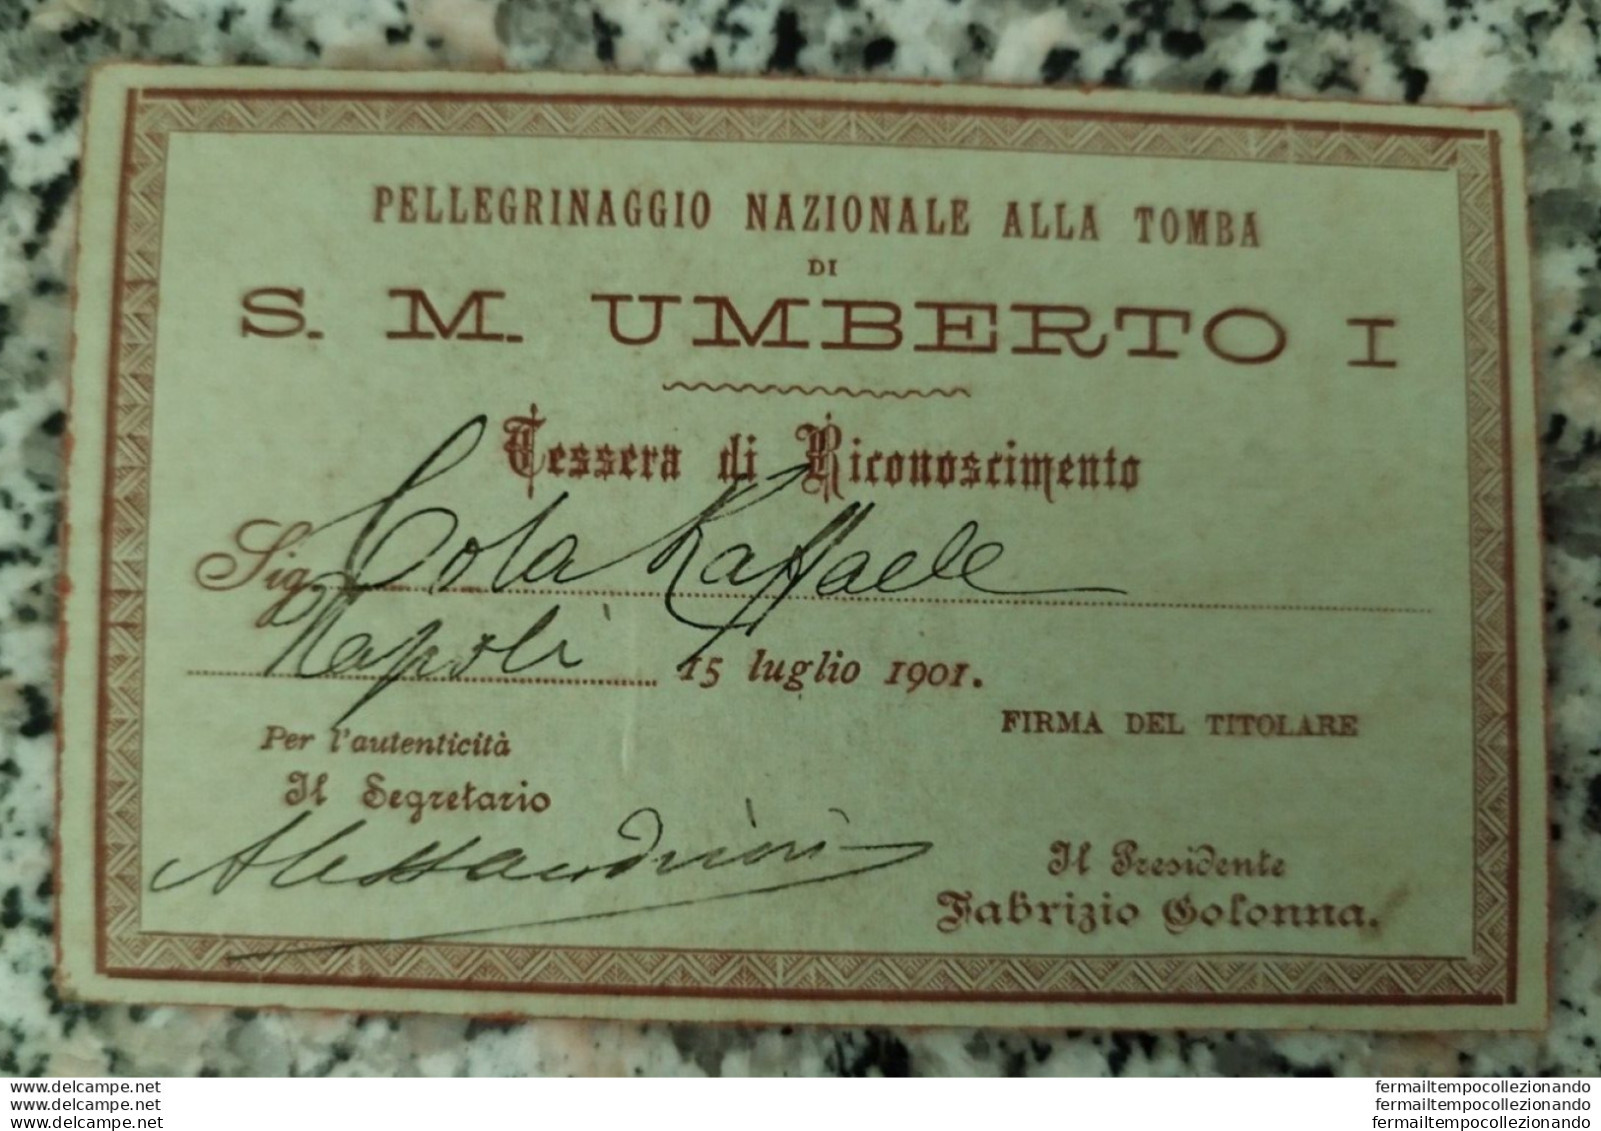 An686 Cartoncino Pellegrinaggio Nazionale Alla Tomba S.m.umberto I 1901 - Tessere Associative